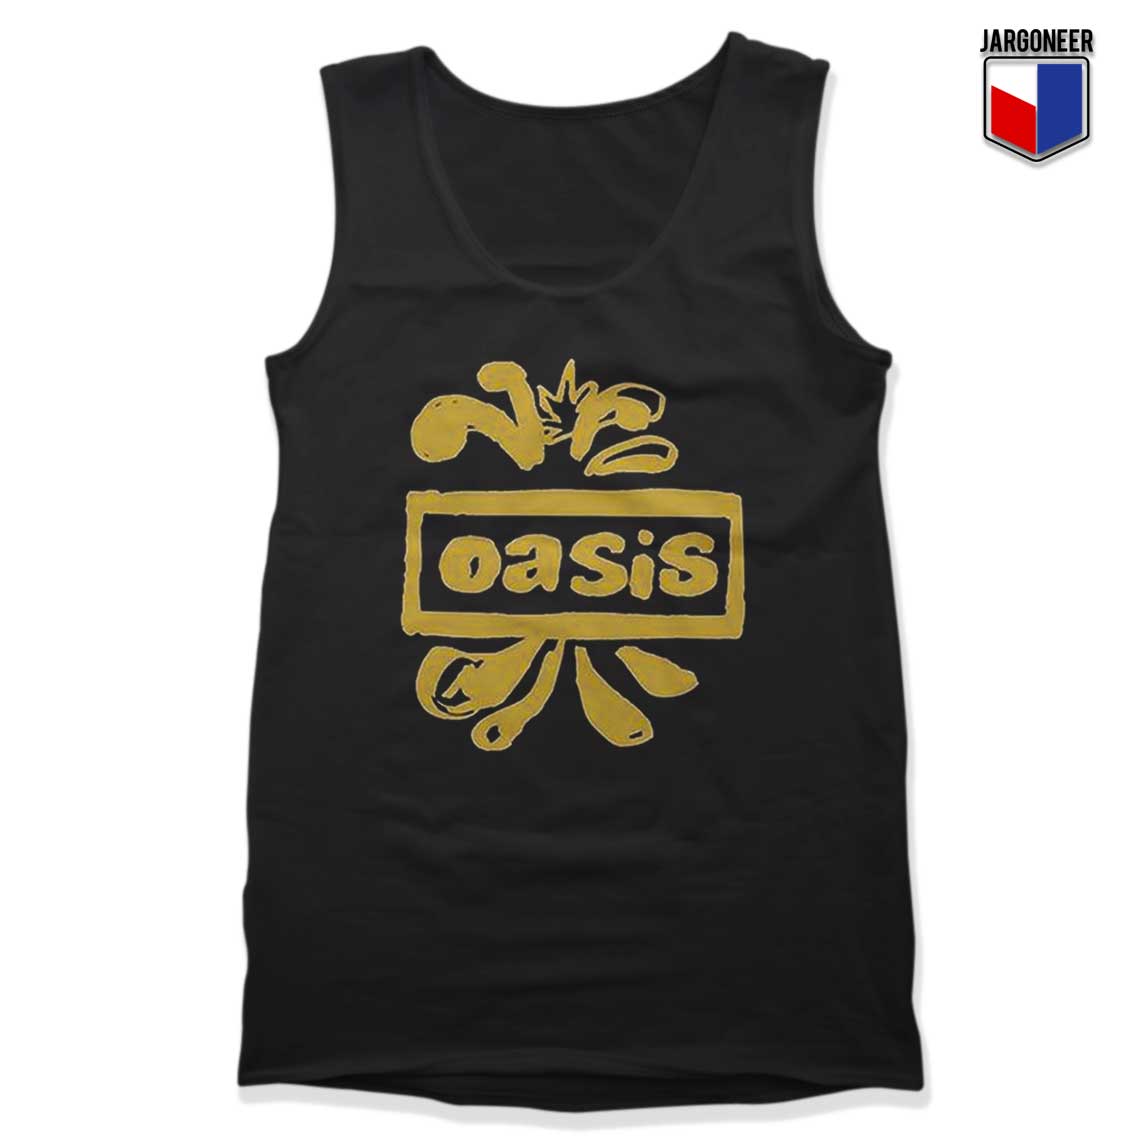 Oasis Decca Logo Tank Top - Shop Unique Graphic Cool Shirt Designs